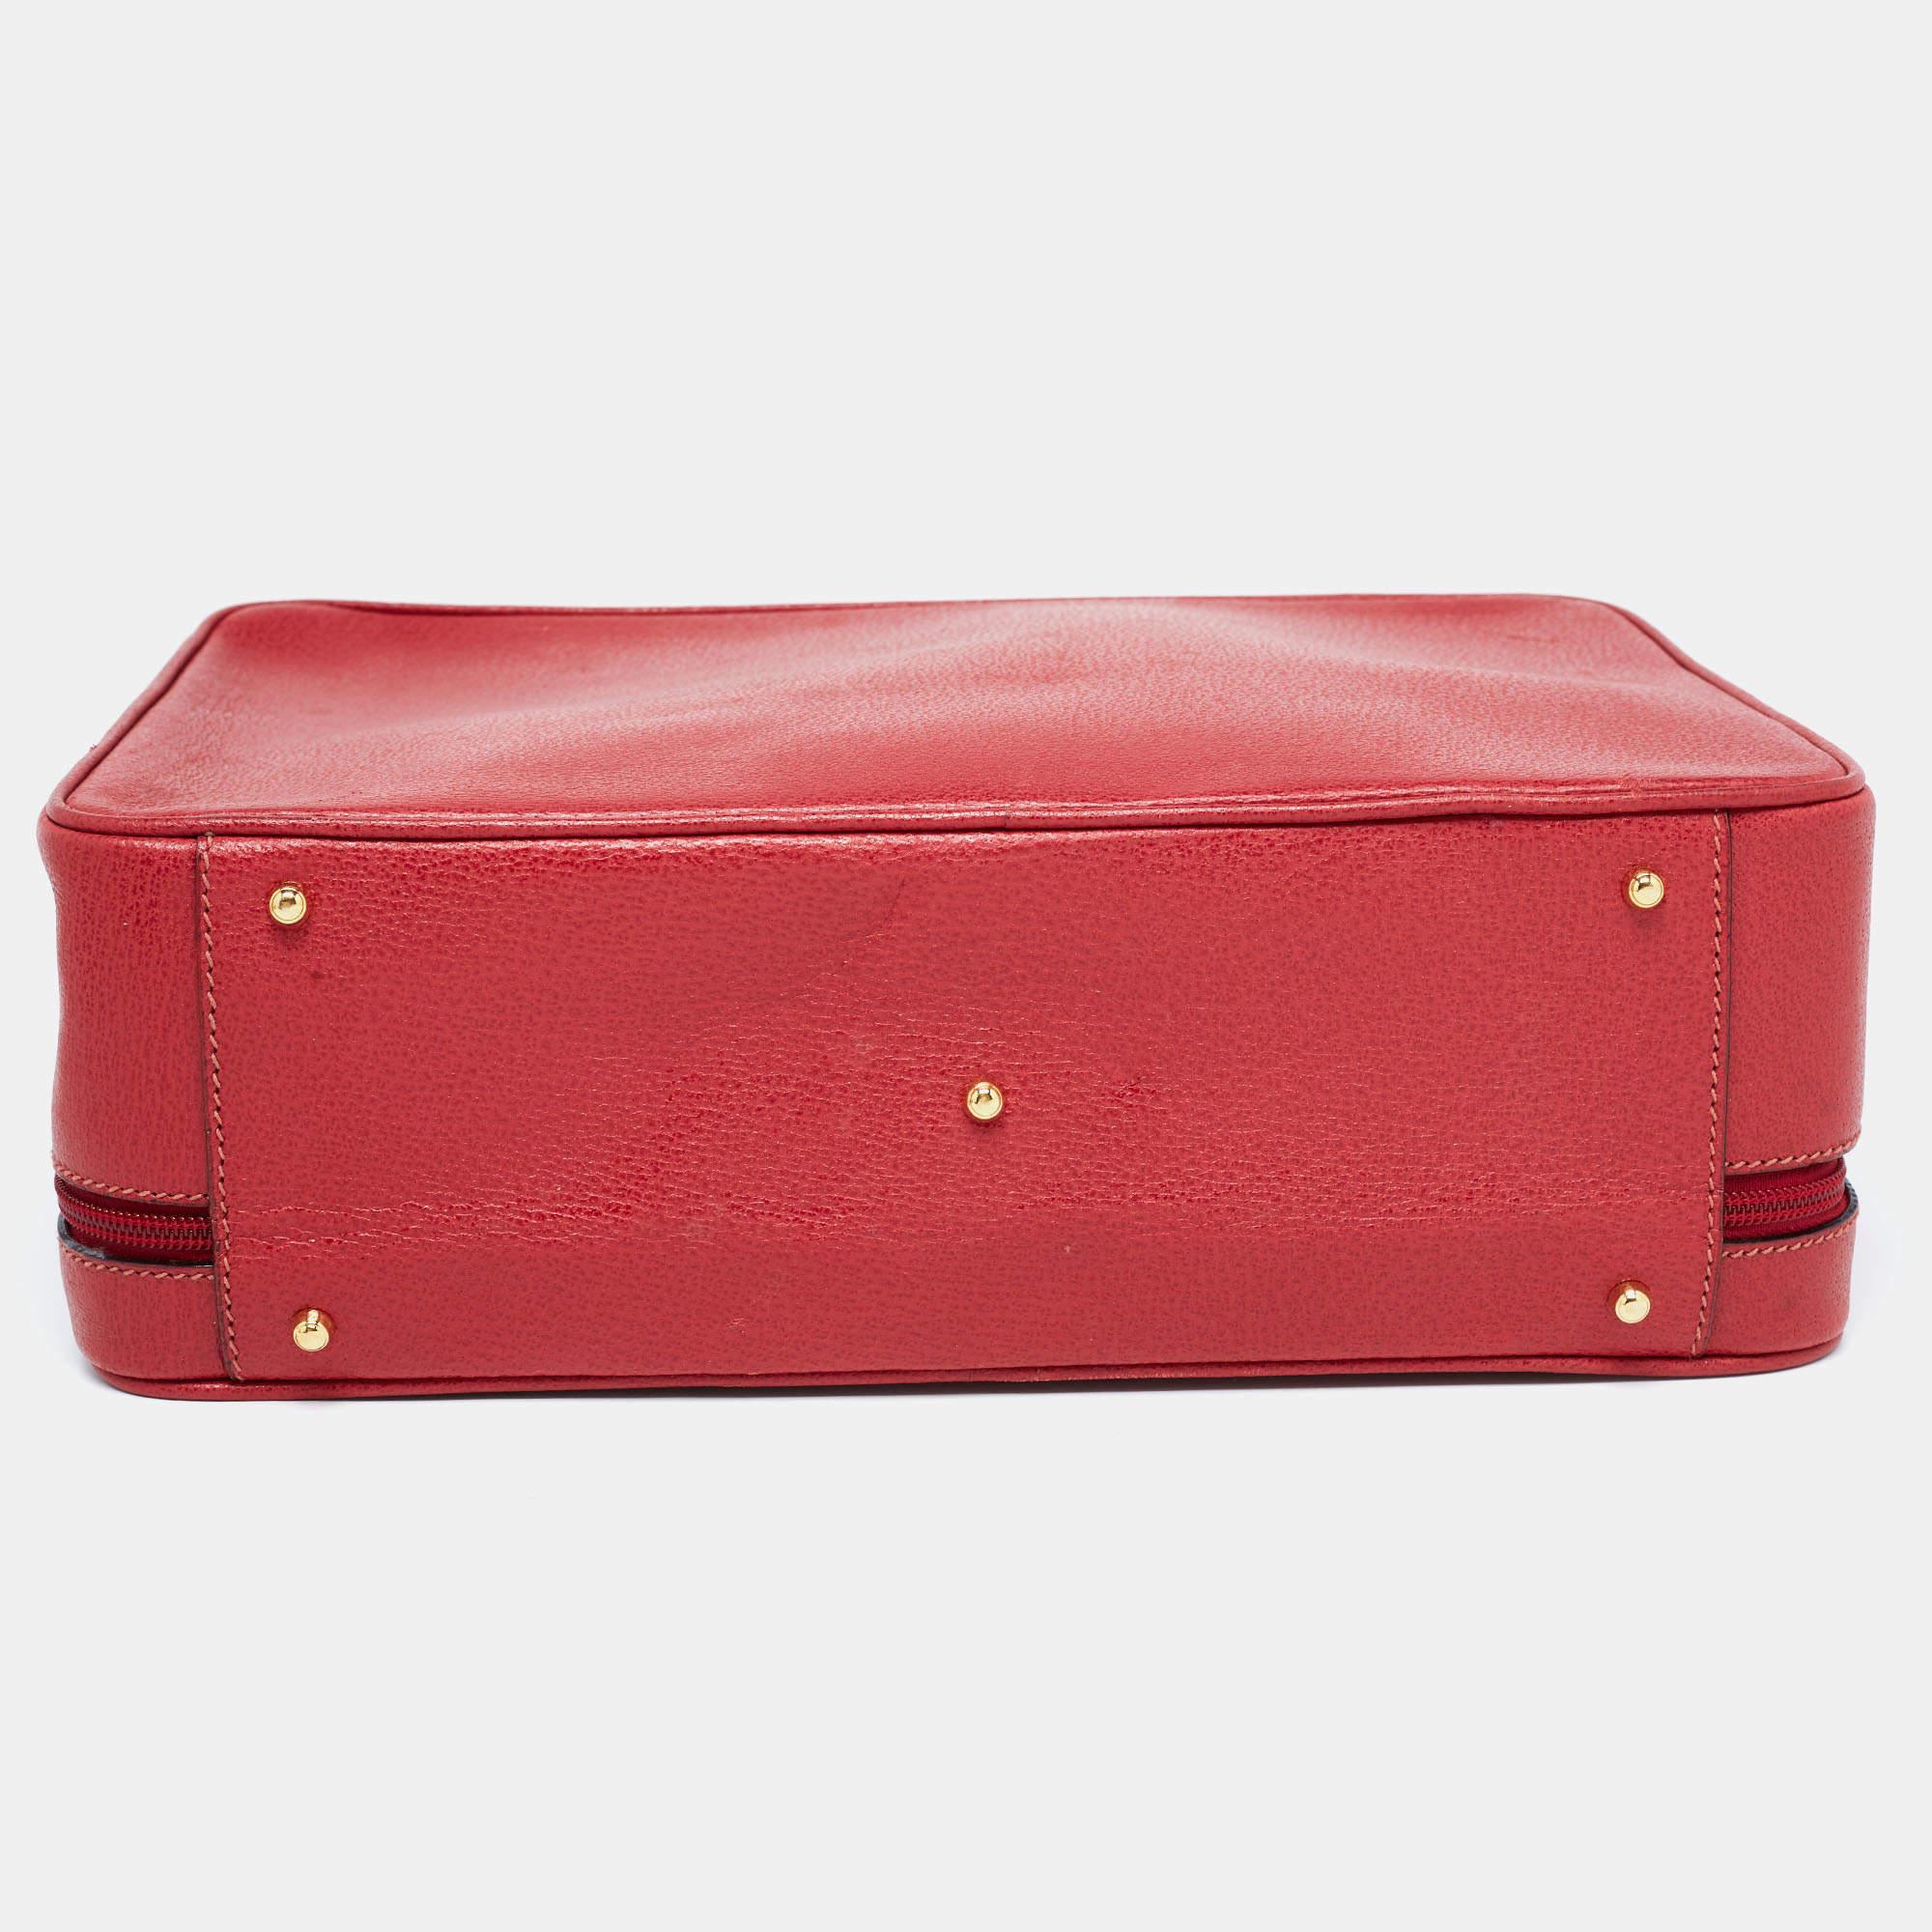 Gucci Red Leather Briefcase Bag In Good Condition For Sale In Dubai, Al Qouz 2